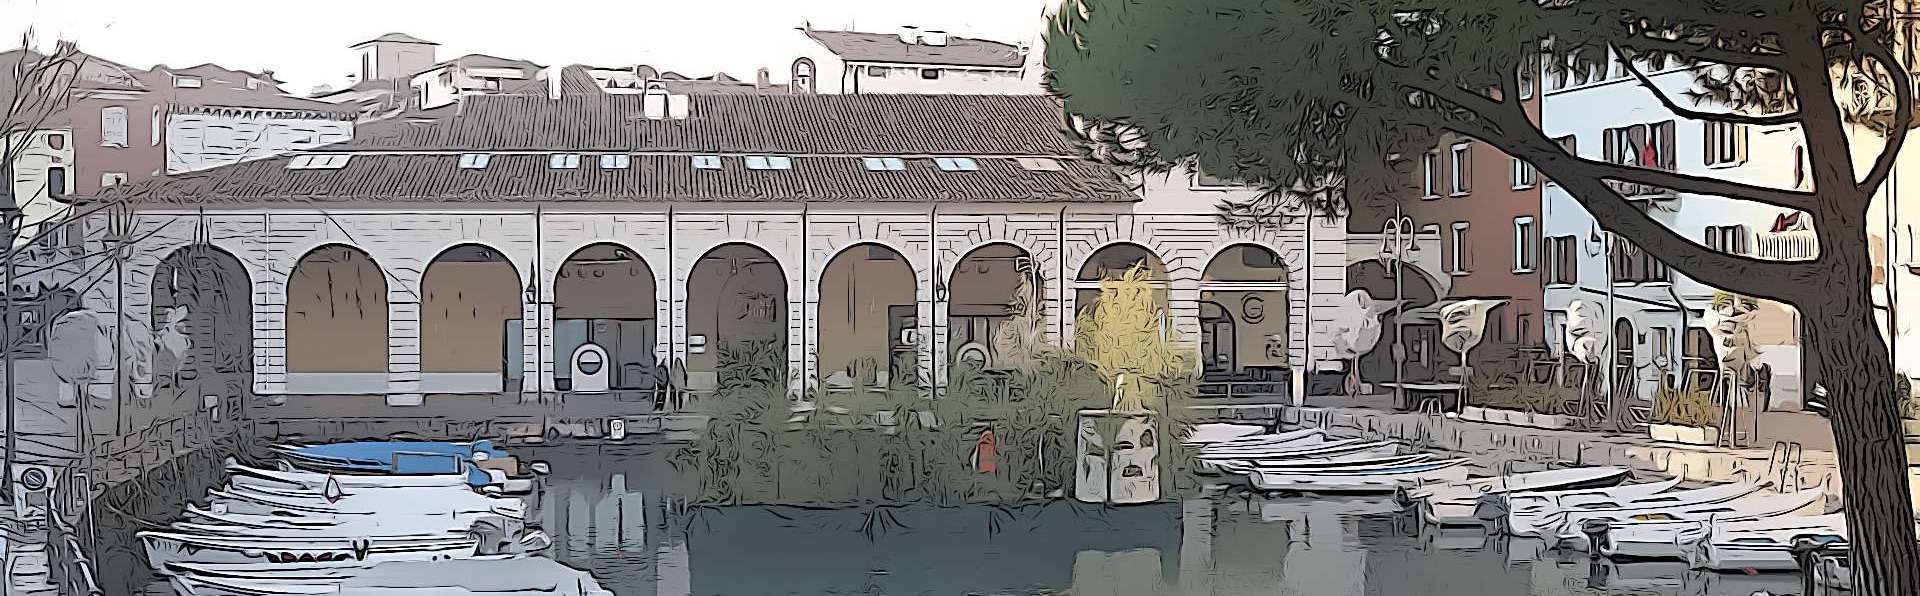 Desenzano del Garda | Palazzo Todeschini and Villa Brunati